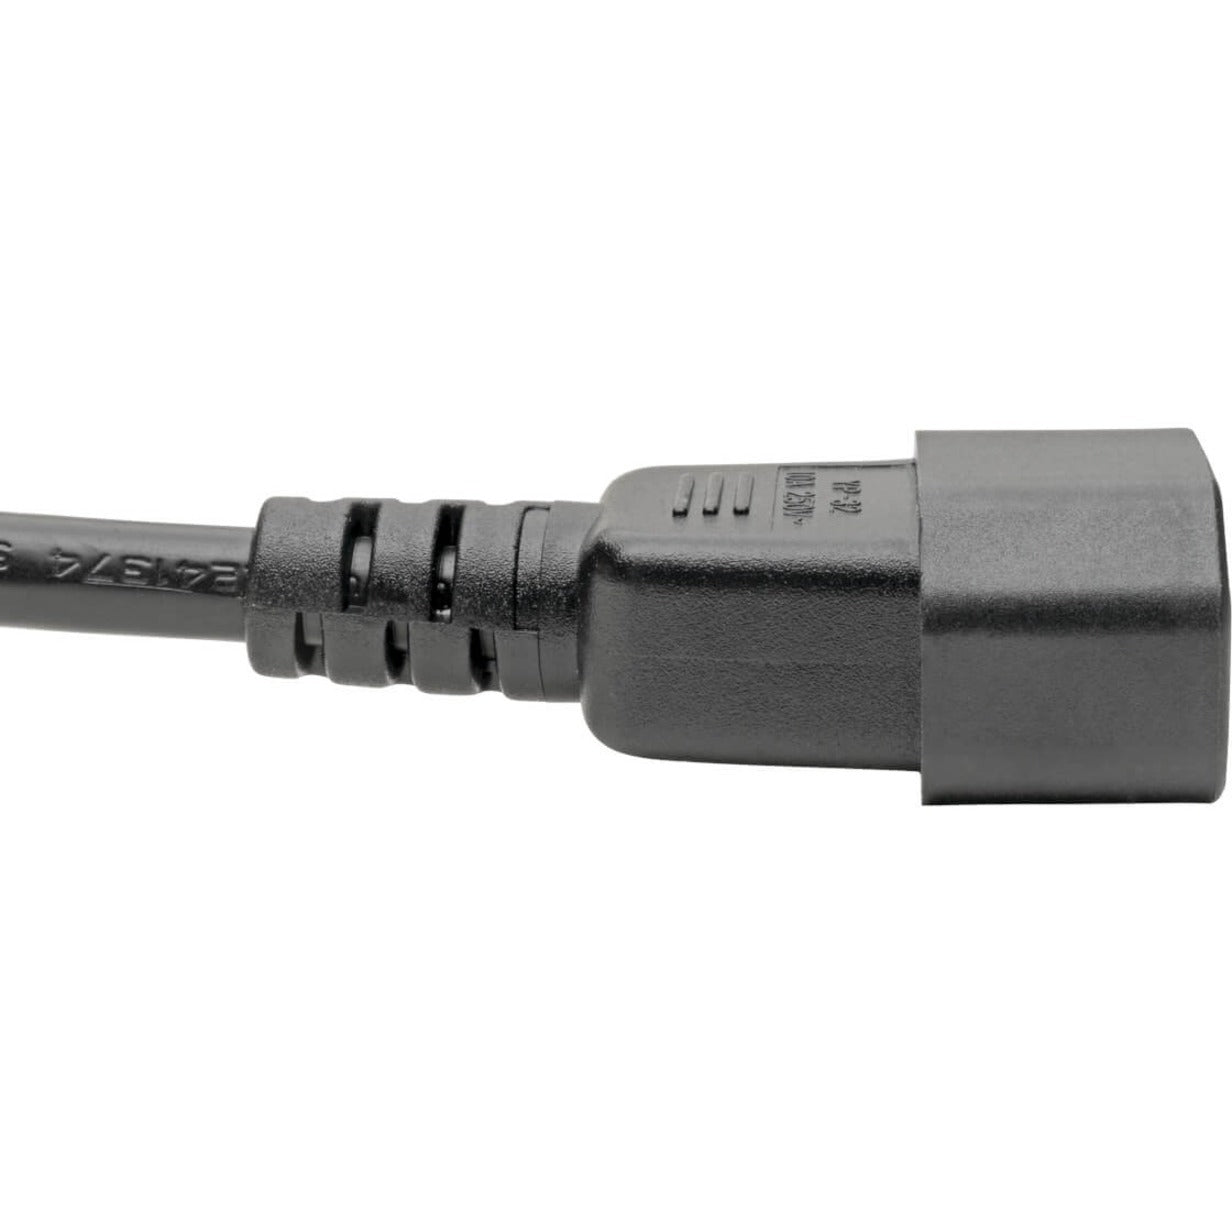 Tripp Lite P014-006 Standard Power Cord, 6 ft, 2.50 A, 120 V AC, 230 V AC